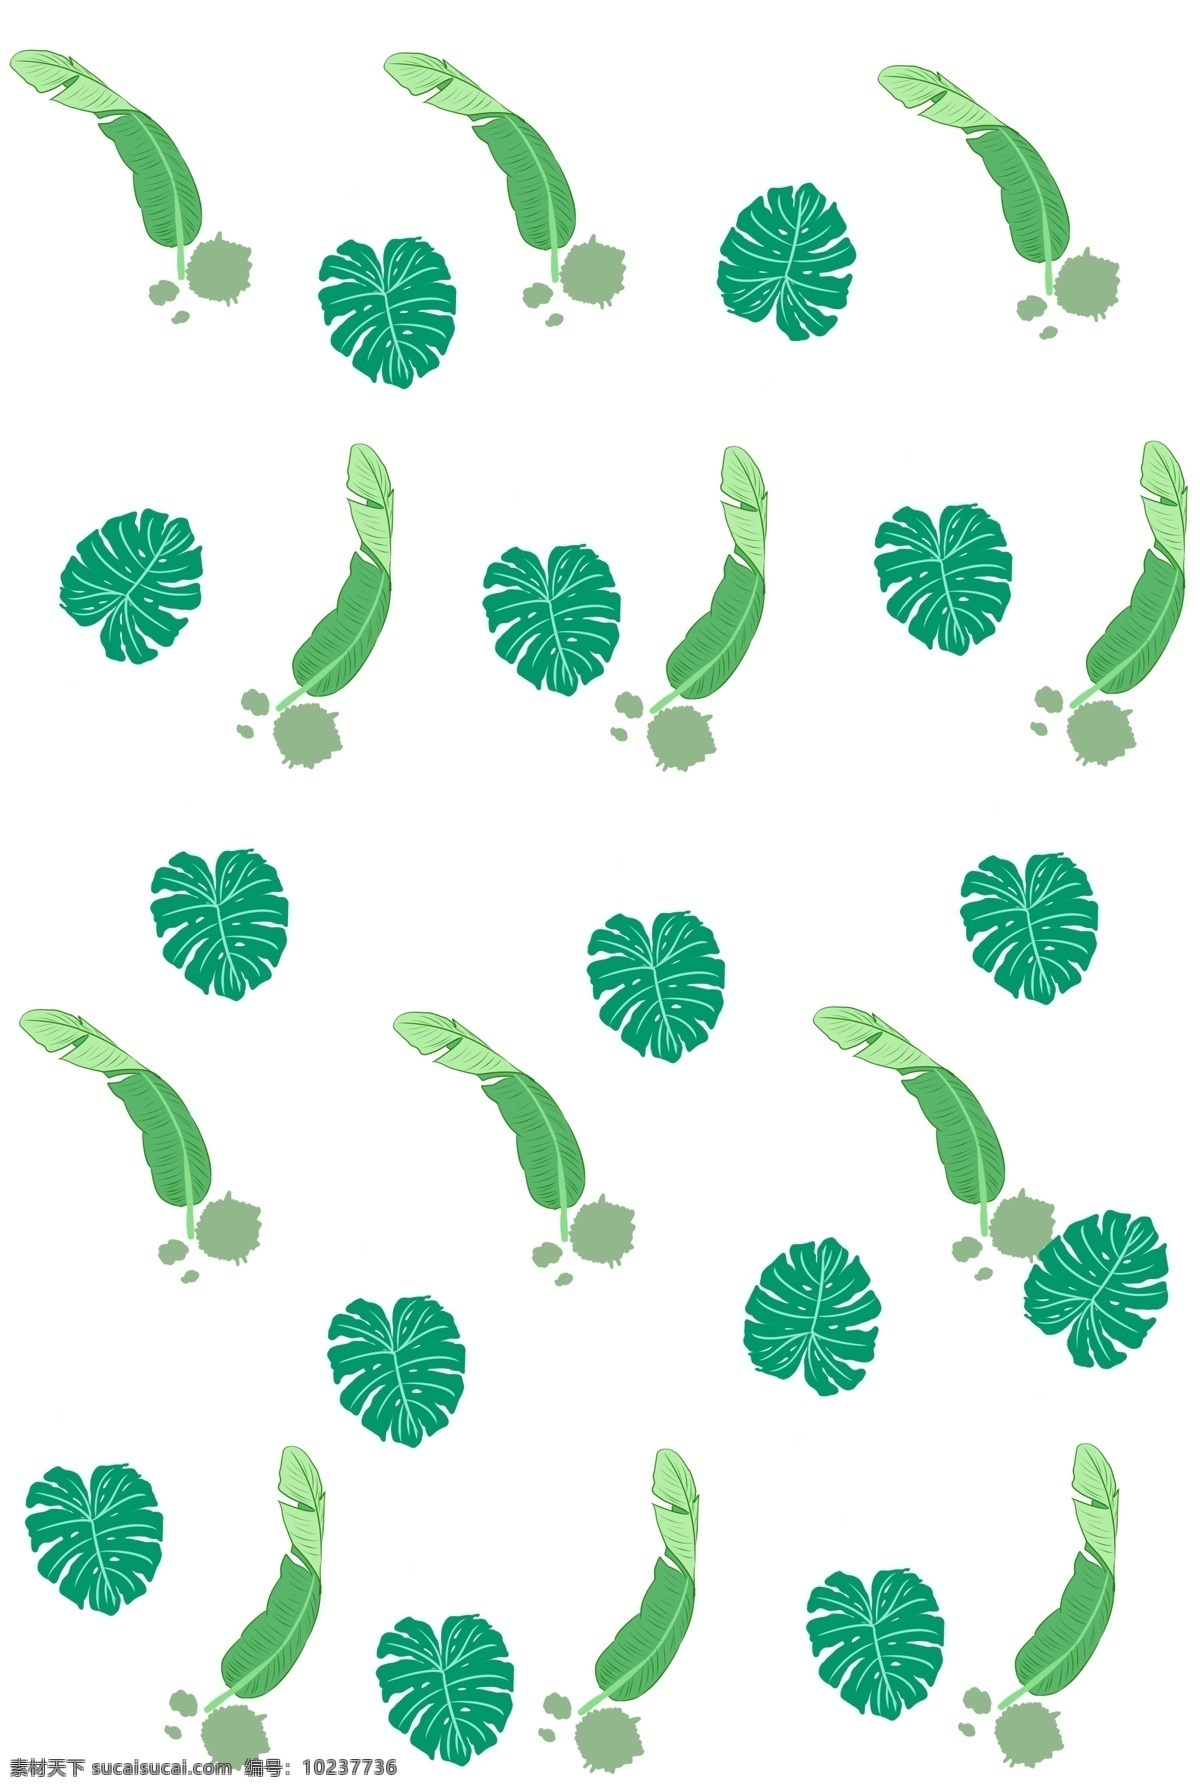 手绘 漂亮 植物 底纹 漂亮的植物 卡通插画 手绘植物插画 创意的底纹 绿色的树叶 美丽的植物